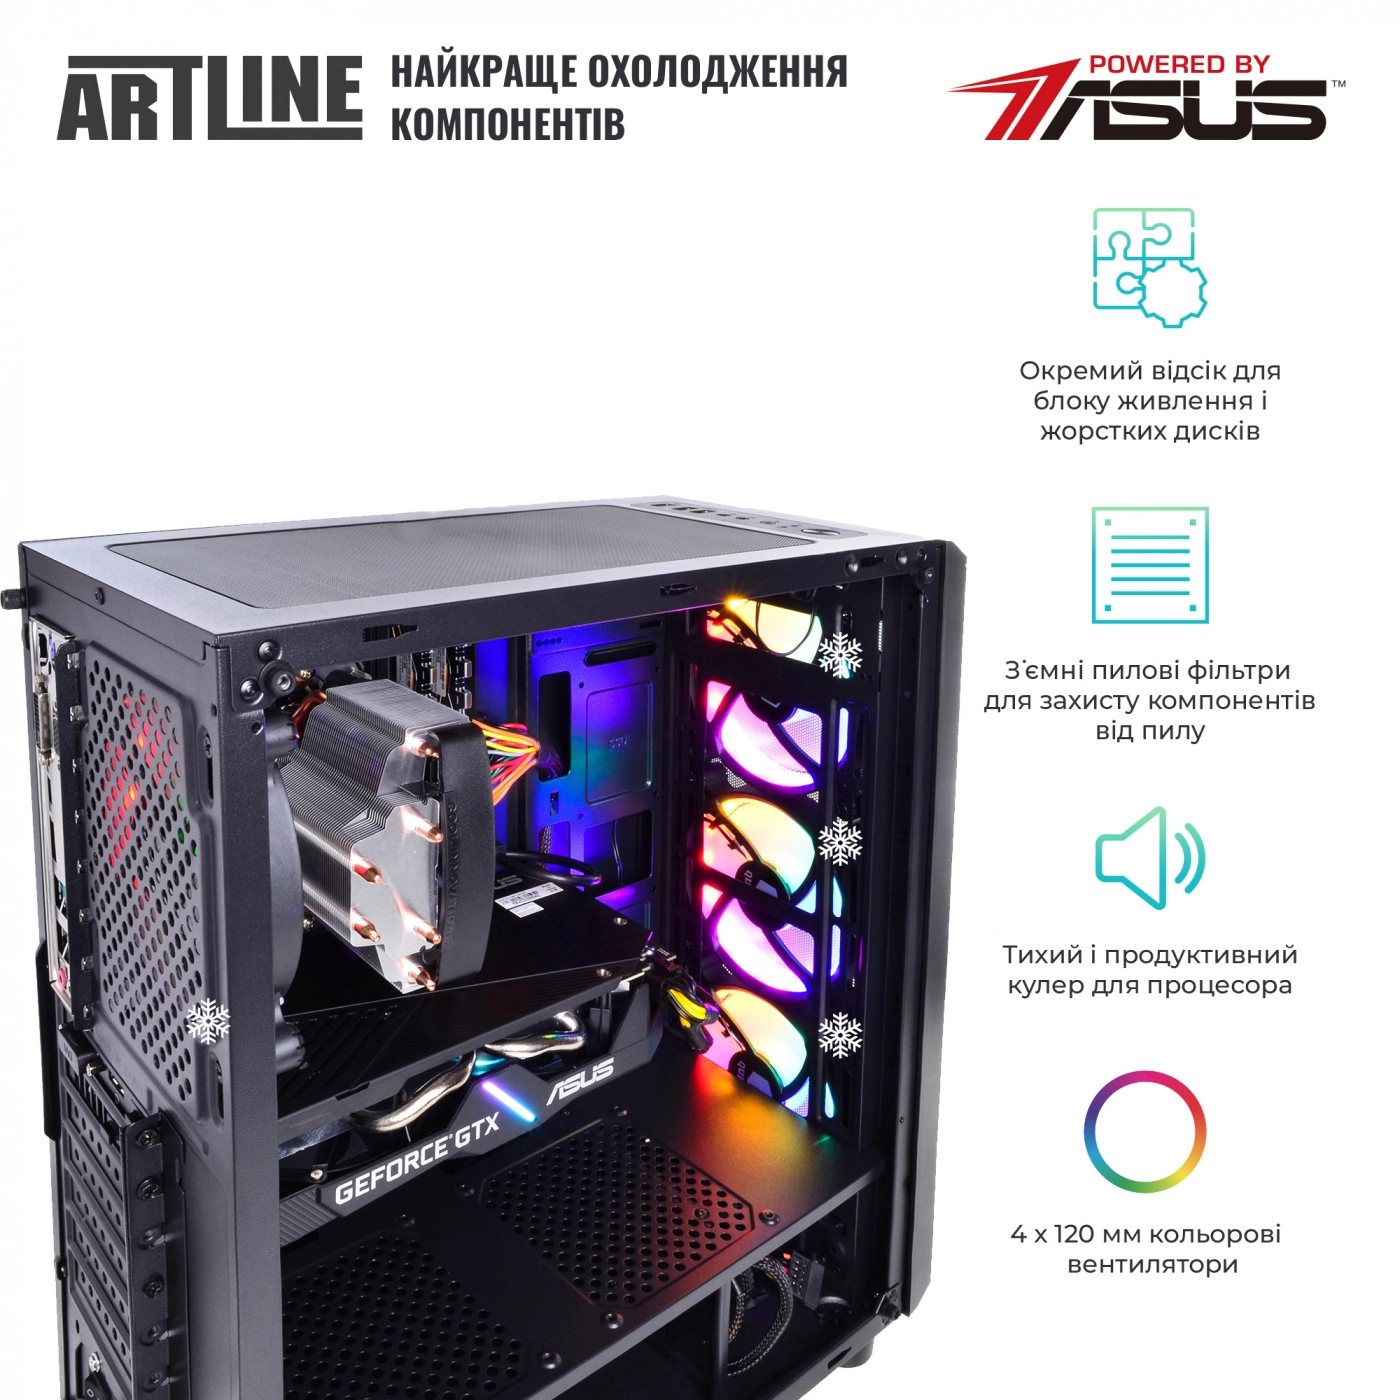 Купить Компьютер ARTLINE Gaming X39v60 - фото 3